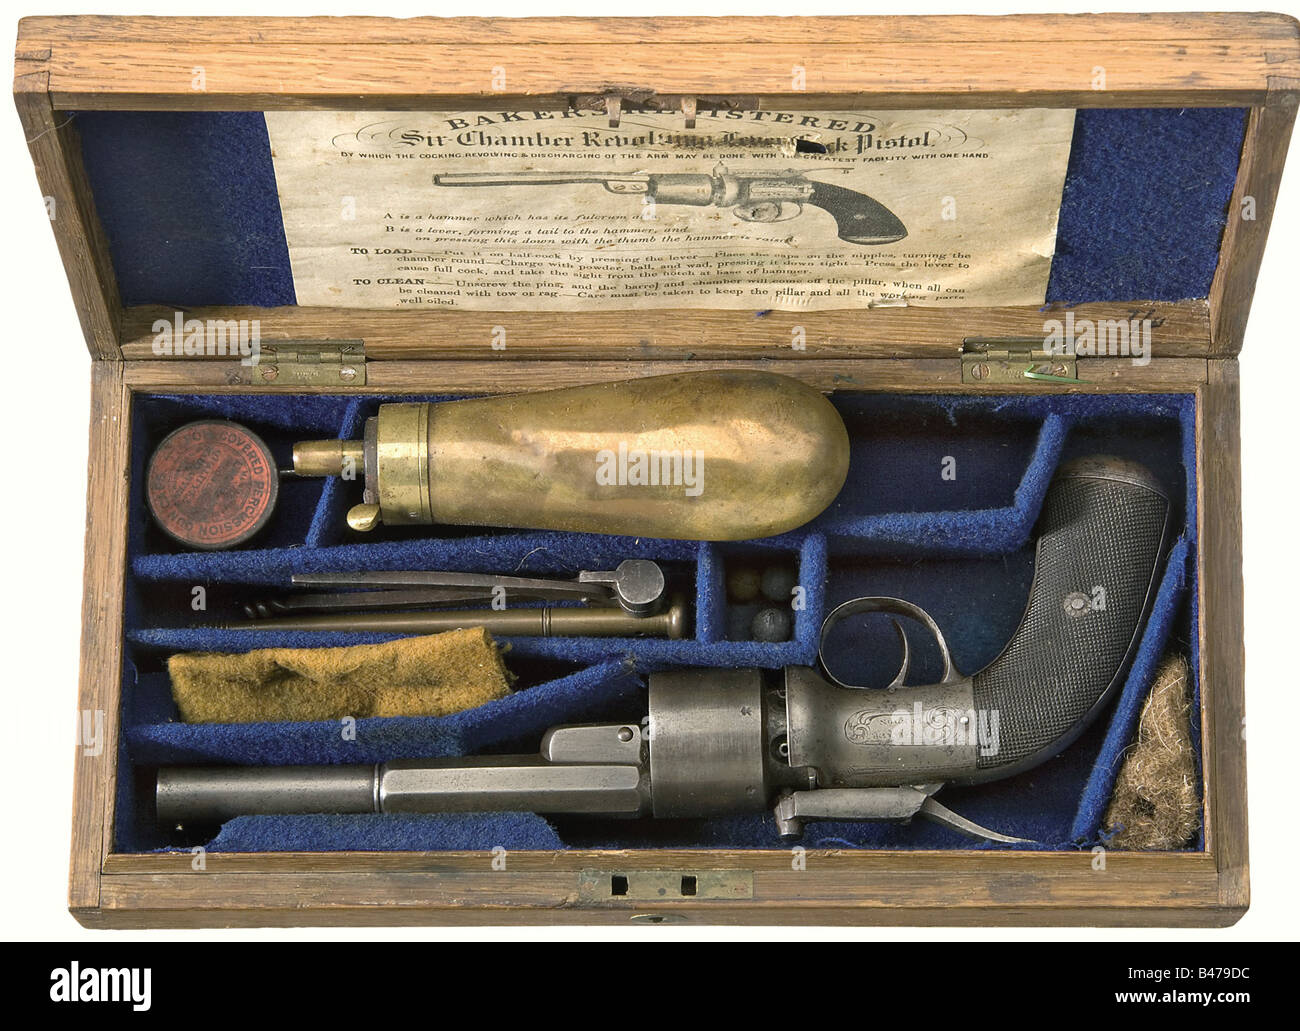 Ein Baker-Percussion-Revolver, London, ca. 1850 In cal..44 Nummer 3. Geflohene Bohrung, Sechsschusszylinder mit Londoner Prüfmarke. Eingraviert mit einem zentralen Hammer. Oben eingeschrieben, "Registriert am 24. April. 1850", "Baker London" auf der rechten Seite und "Bakers Patent" auf dem Hammer. Walnussgriffplatten mit feiner Karierung. Länge 29 cm. Im Lieferumfang enthalten ist die originale Holzkoffer, Schlüssel fehlt. Auf dem Deckel befindet sich eine leere Messingplatte. Die Innenseite ist mit blauem Tuch ausgekleidet. Originalanweisungen im Deckel. Zahlreiche Zubehörteile mit Schlagdeckelkasten, Ramrod und Reinigungsstange, Stockfoto